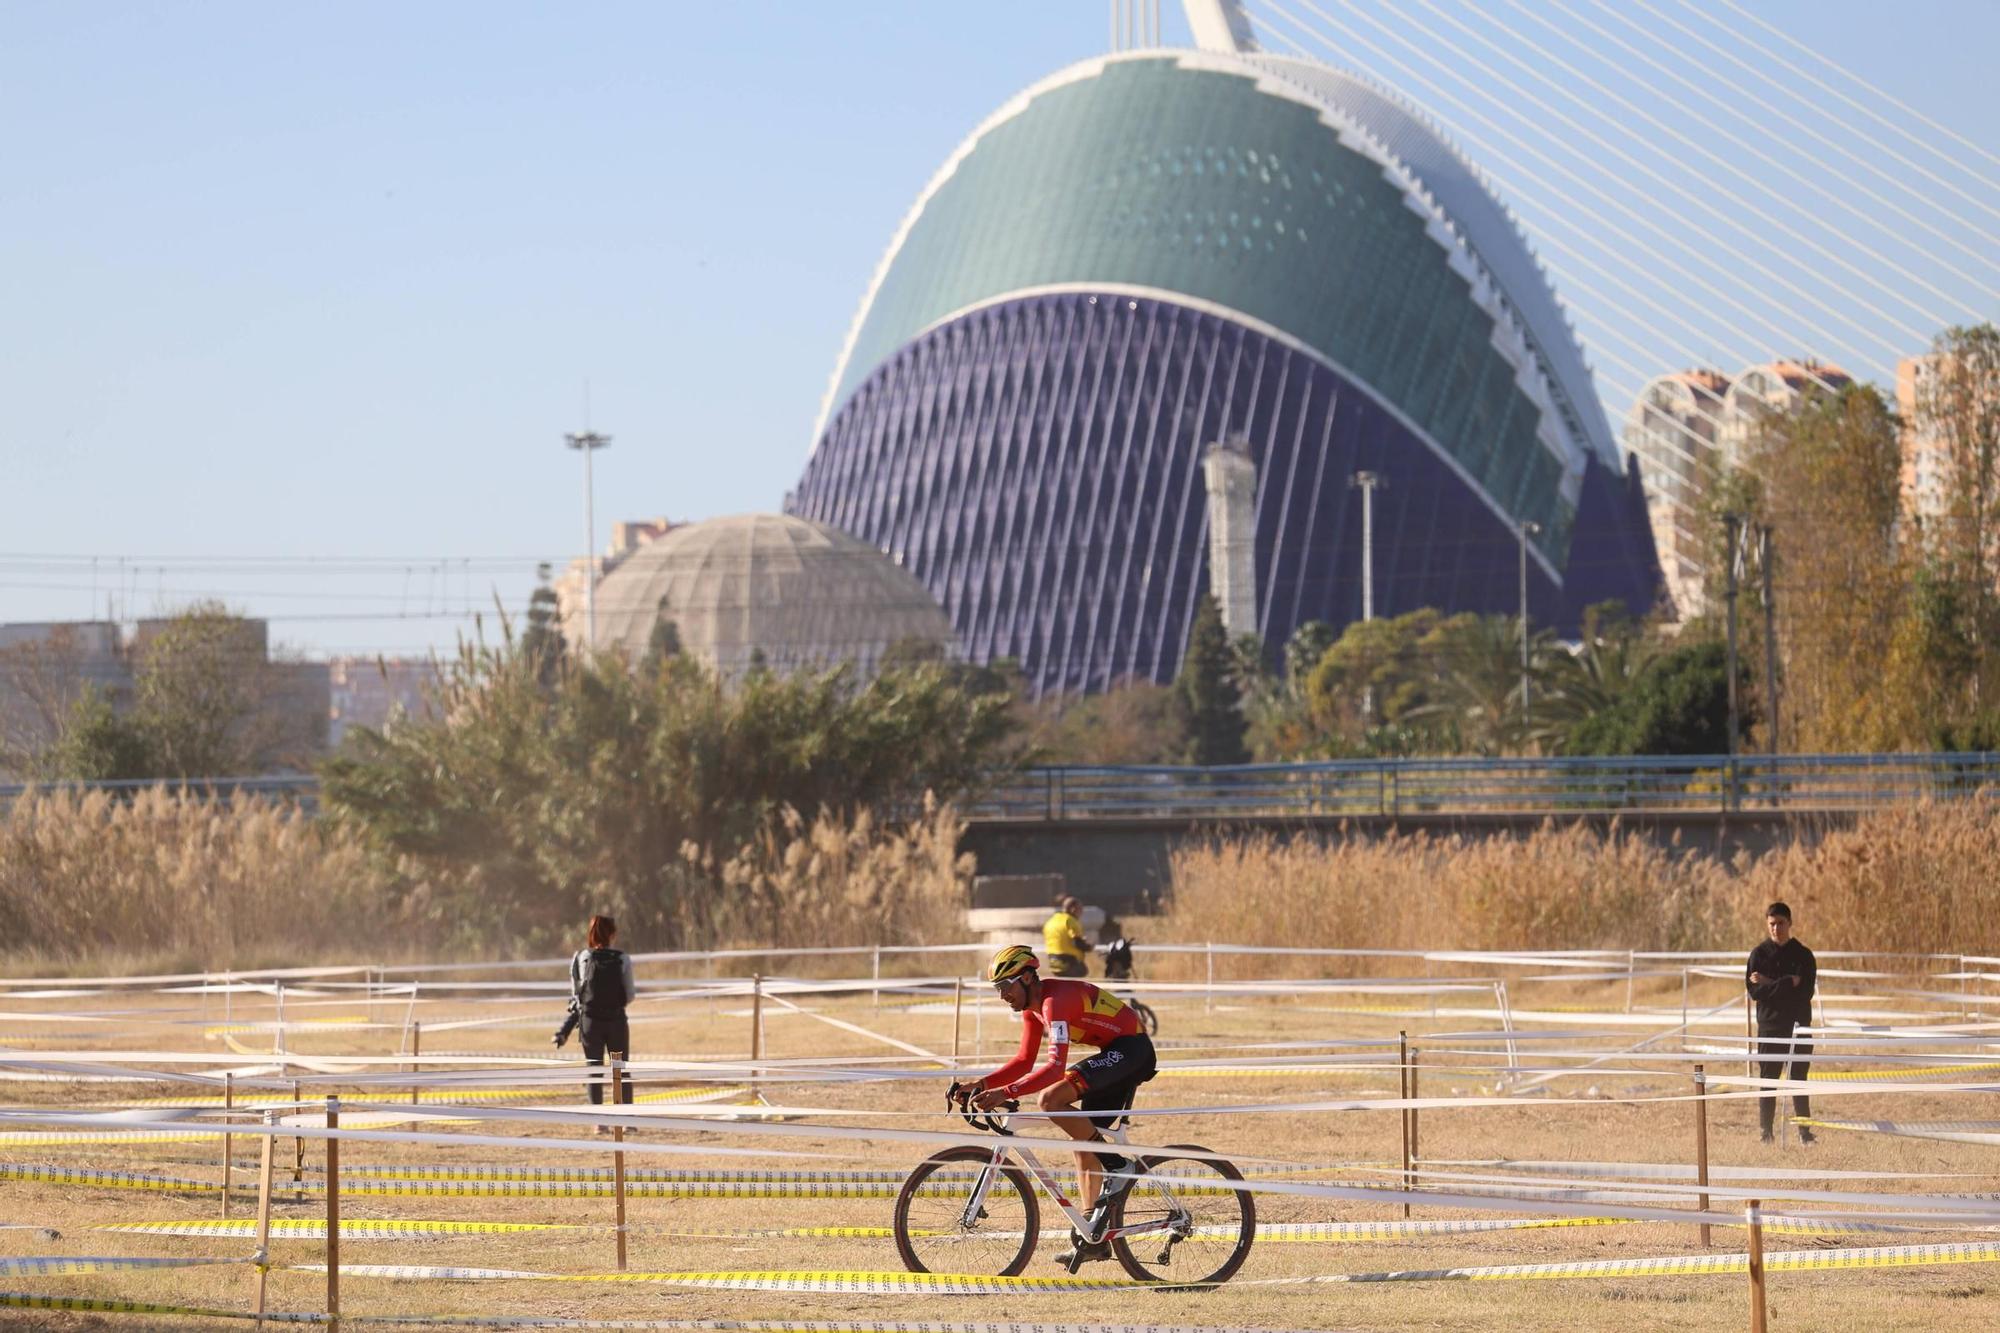 Ciclocrós Internacional Ciudad de Valencia 2023